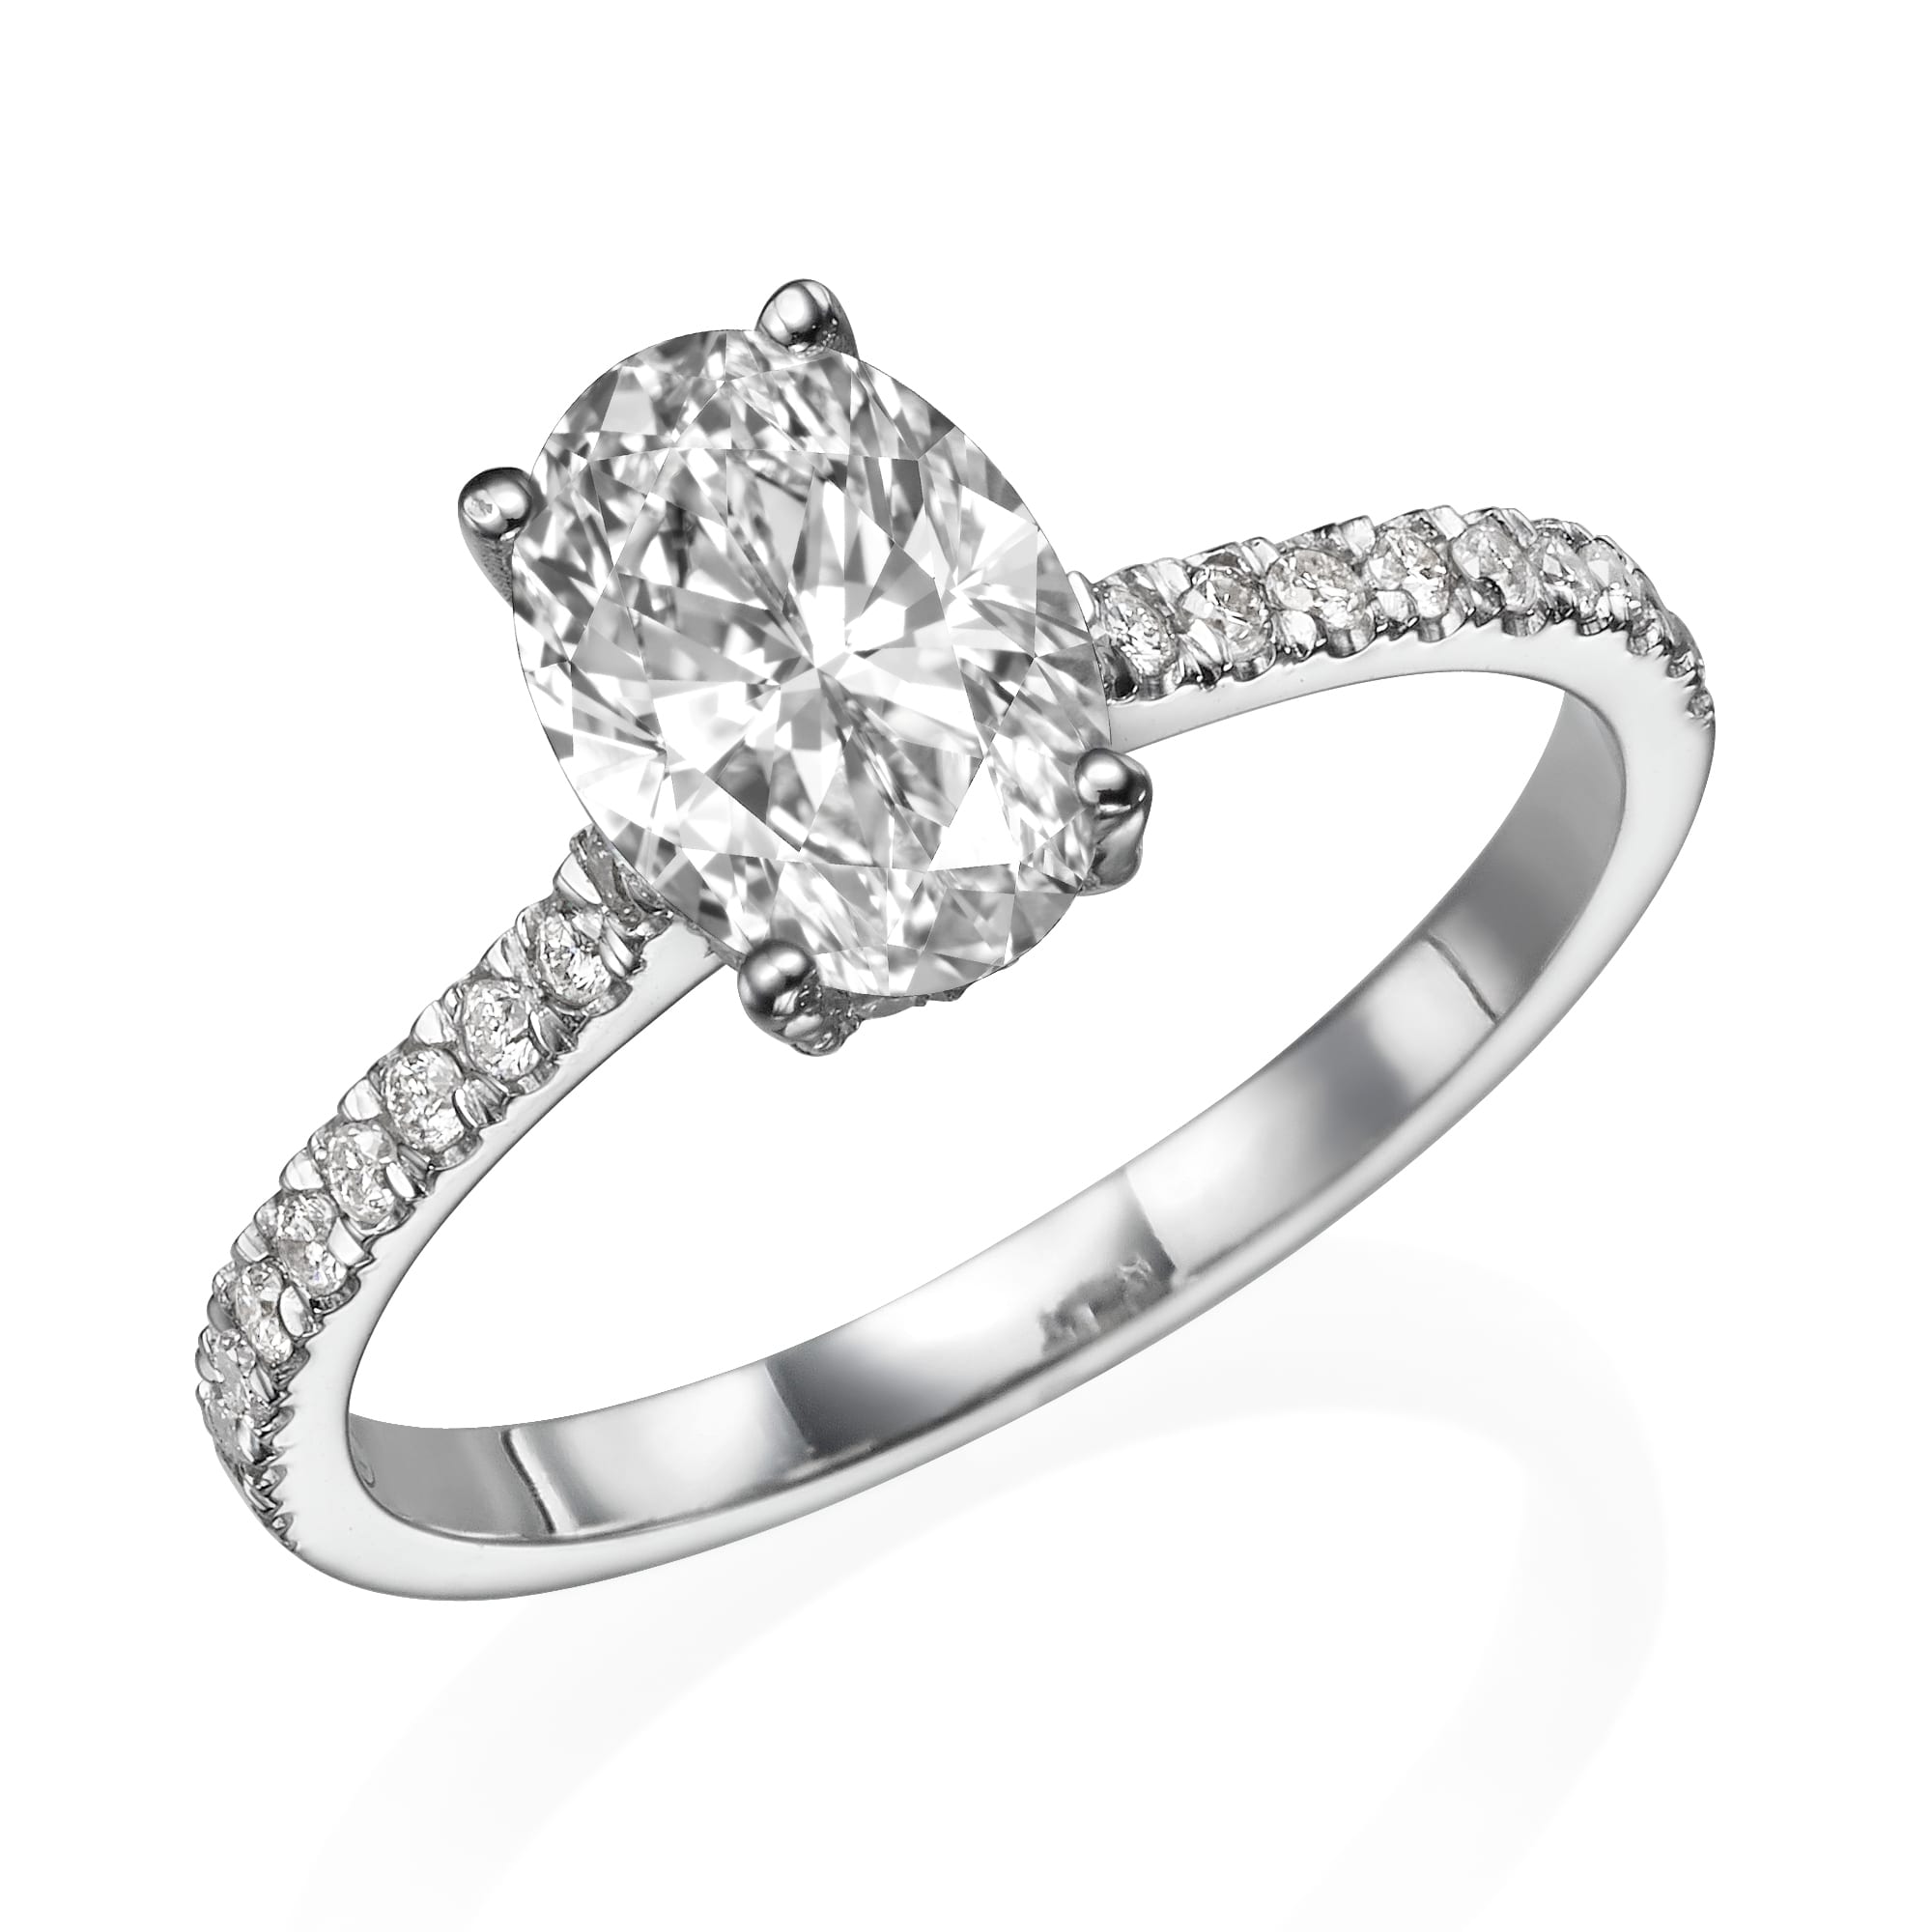 טבעת אירוסין סגלגלה נוצצת משובצת זהב לבן או פלטינה, הכוללת שורה של יהלומים קטנים יותר לאורך הרצועה - דגם טבעת אירוסין שובה הלב קתרין.